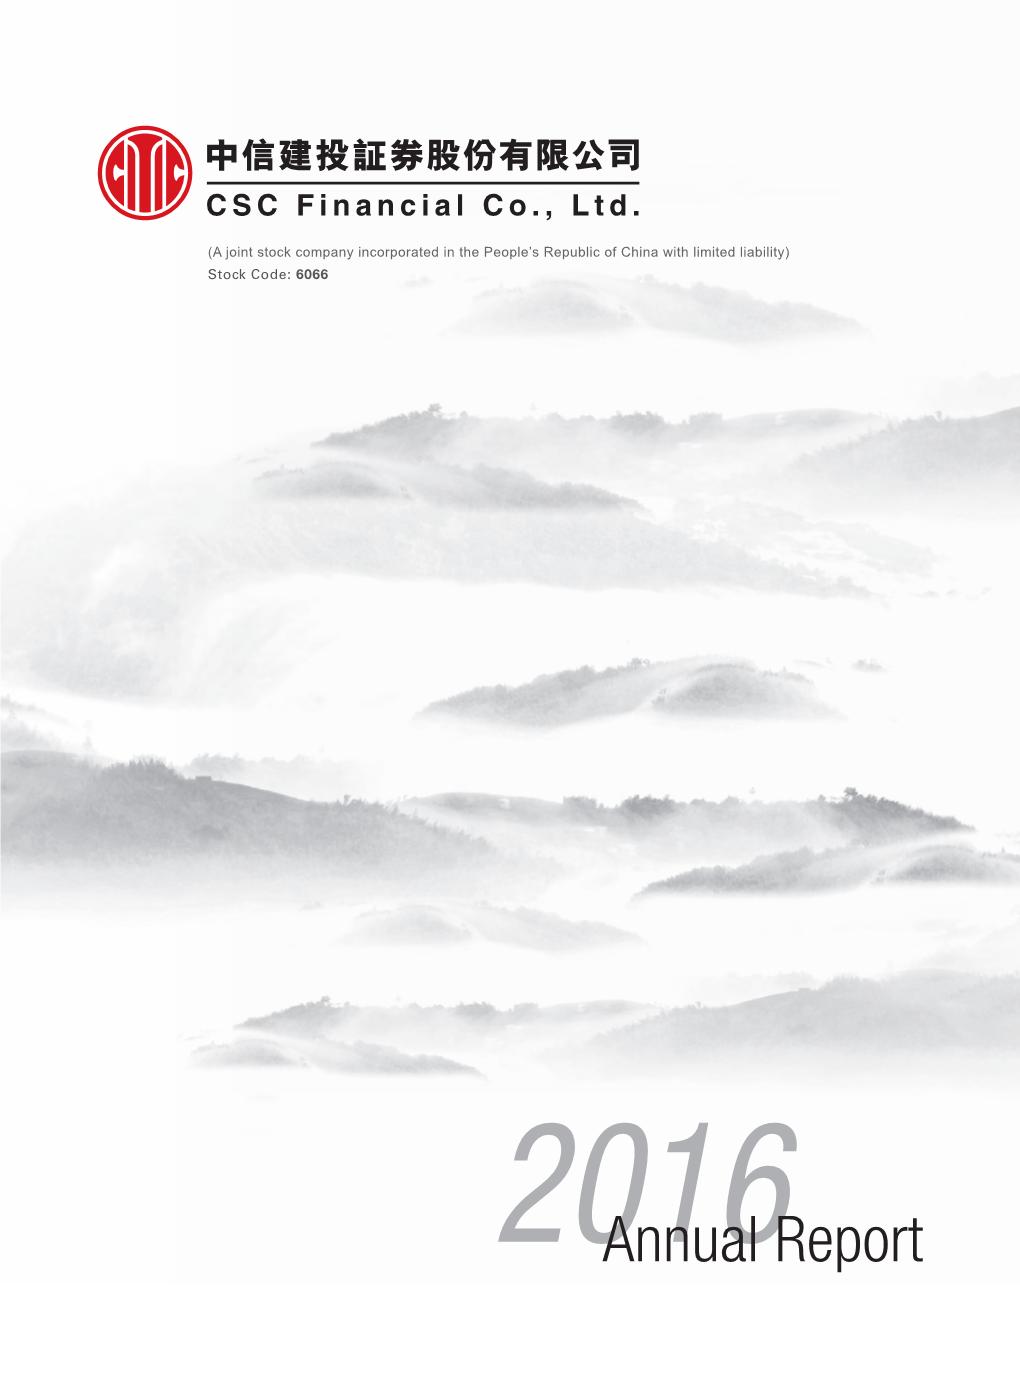 Annual Report 2016 Annual